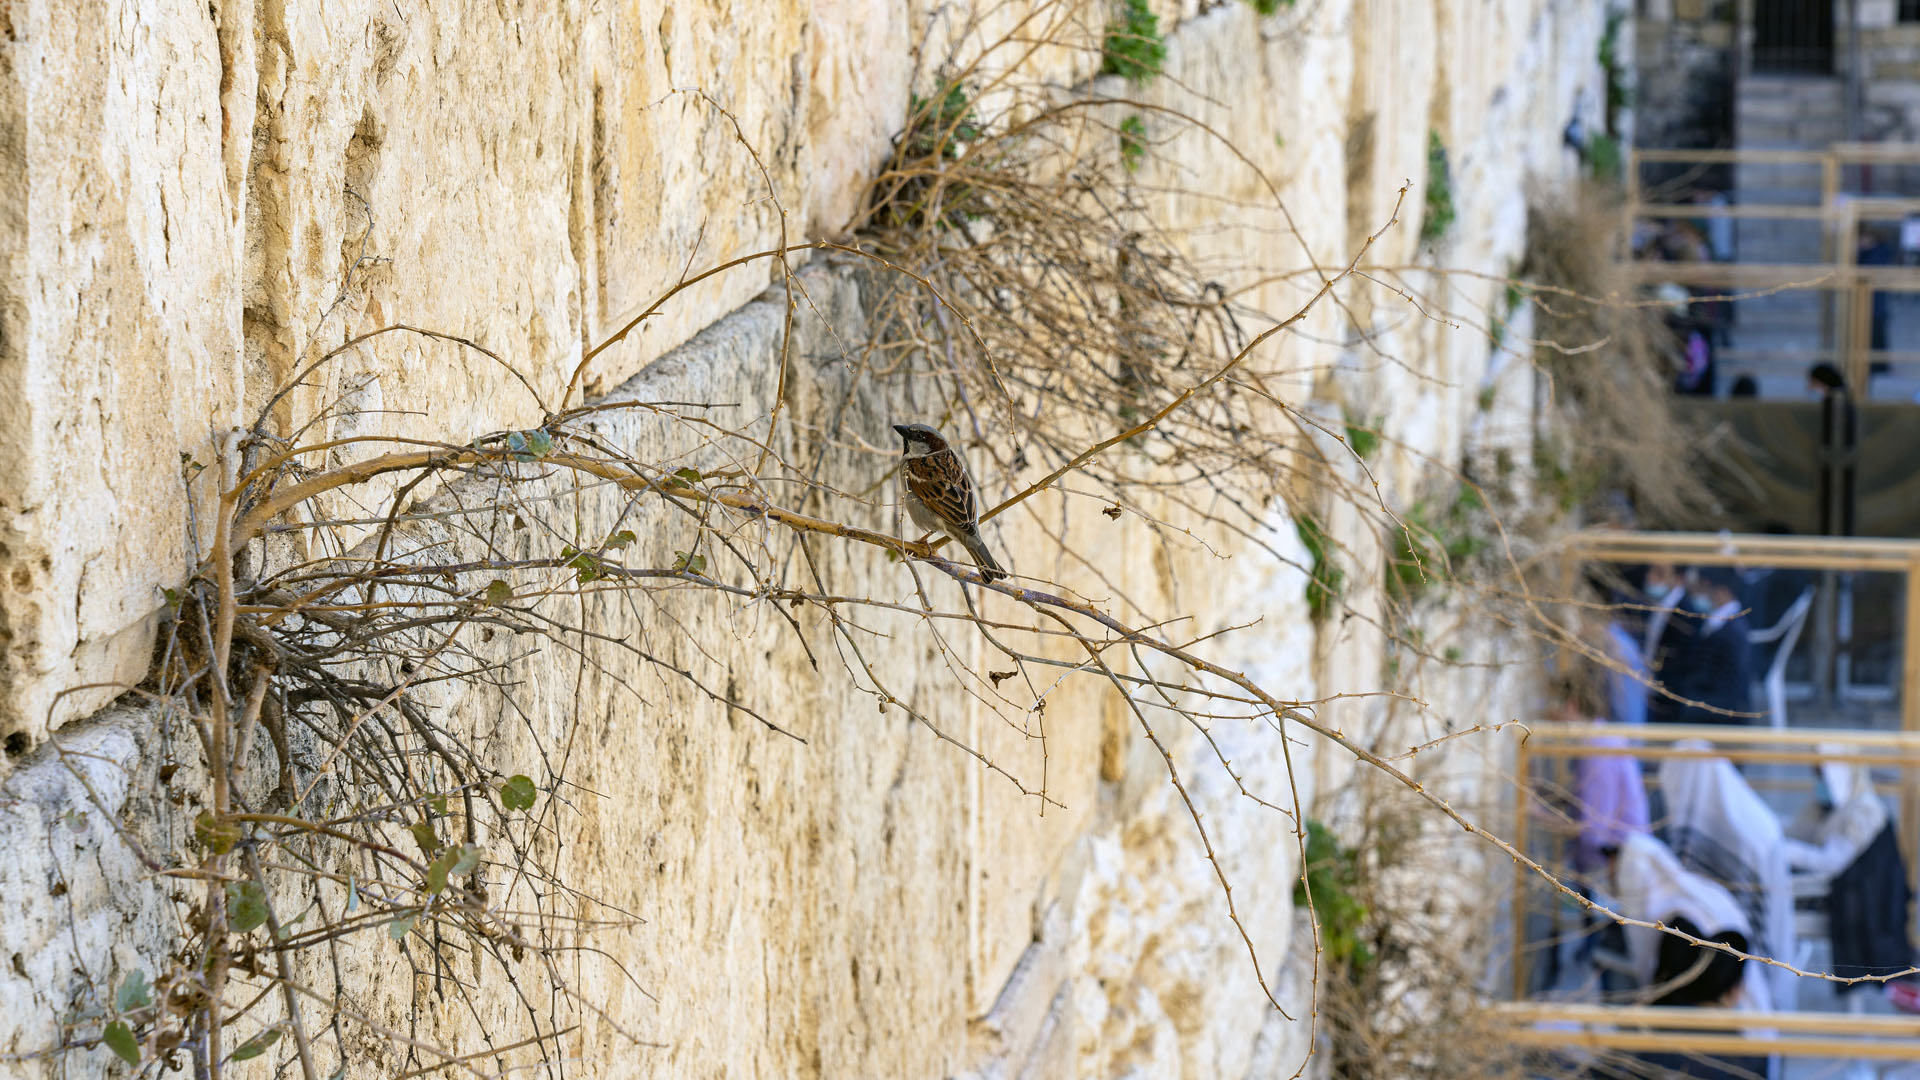 Vögel nisten in den Steinen der ehemaligen Westmauer des Tempelgeländes, hoch über den Köpfen der Beter